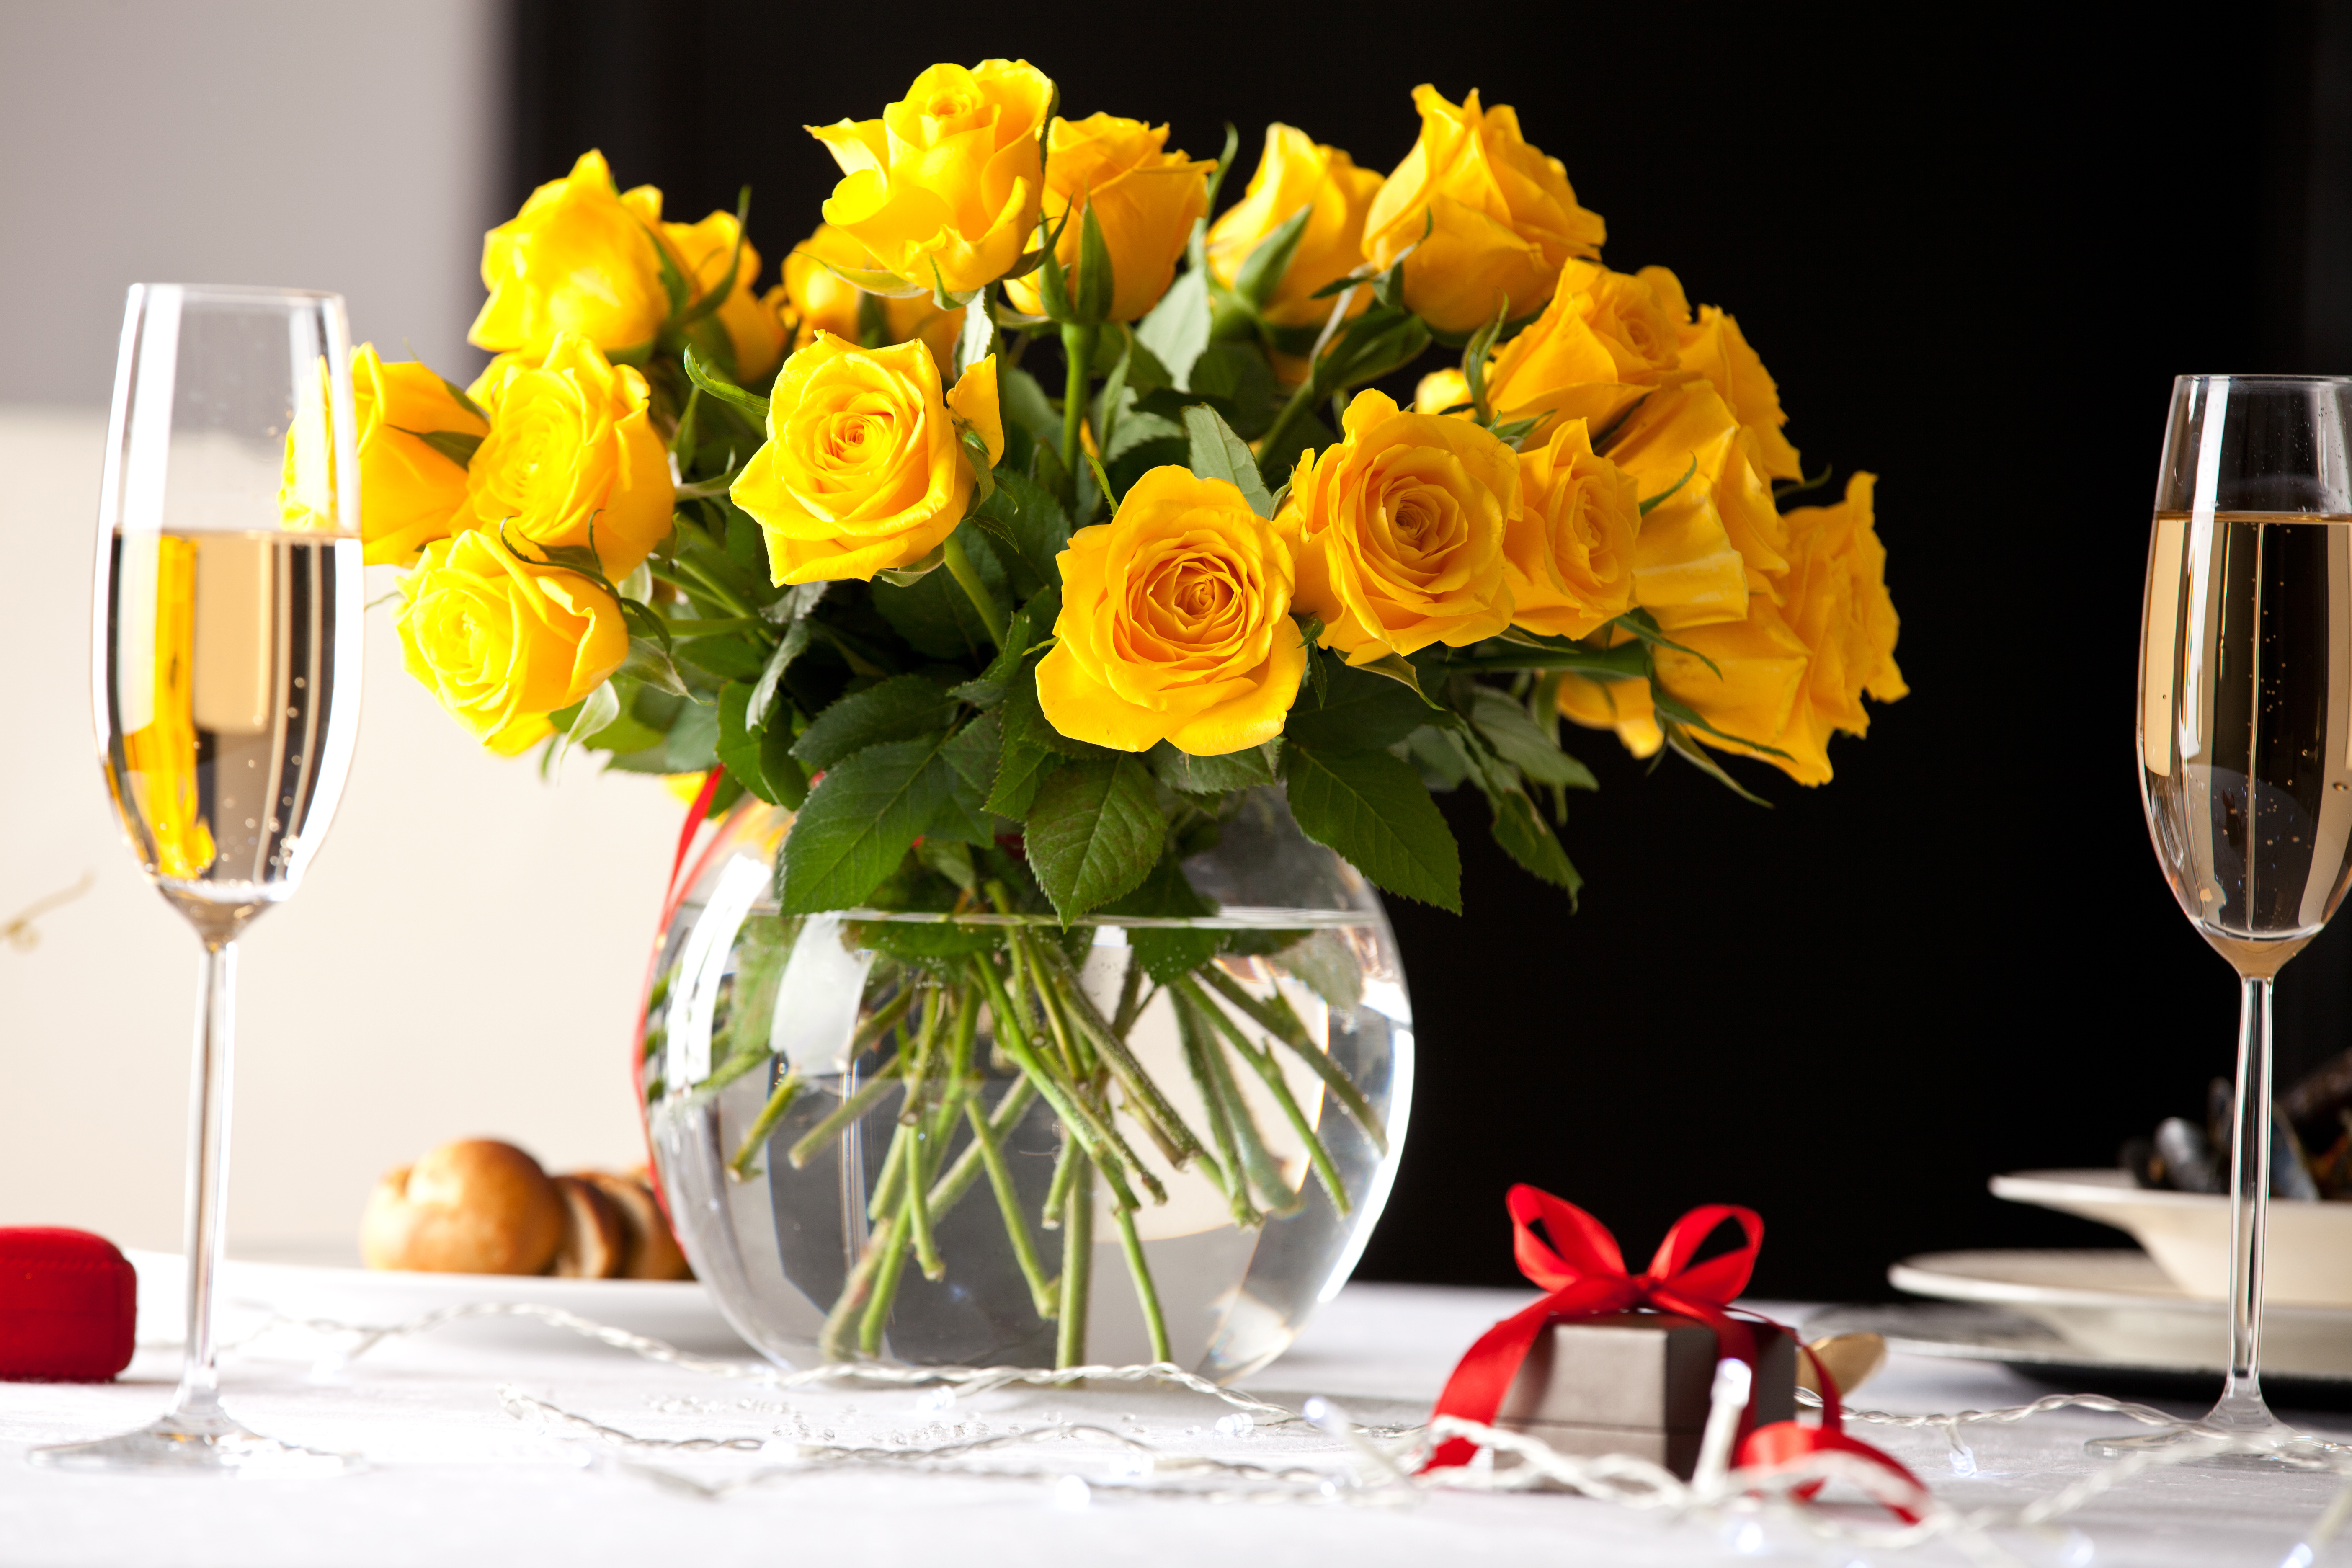 Розы и тюльпаны в одной вазе. Букеты в вазах. Букет в вазе на столе. Желтые розы в вазе. Цветы в бокале.